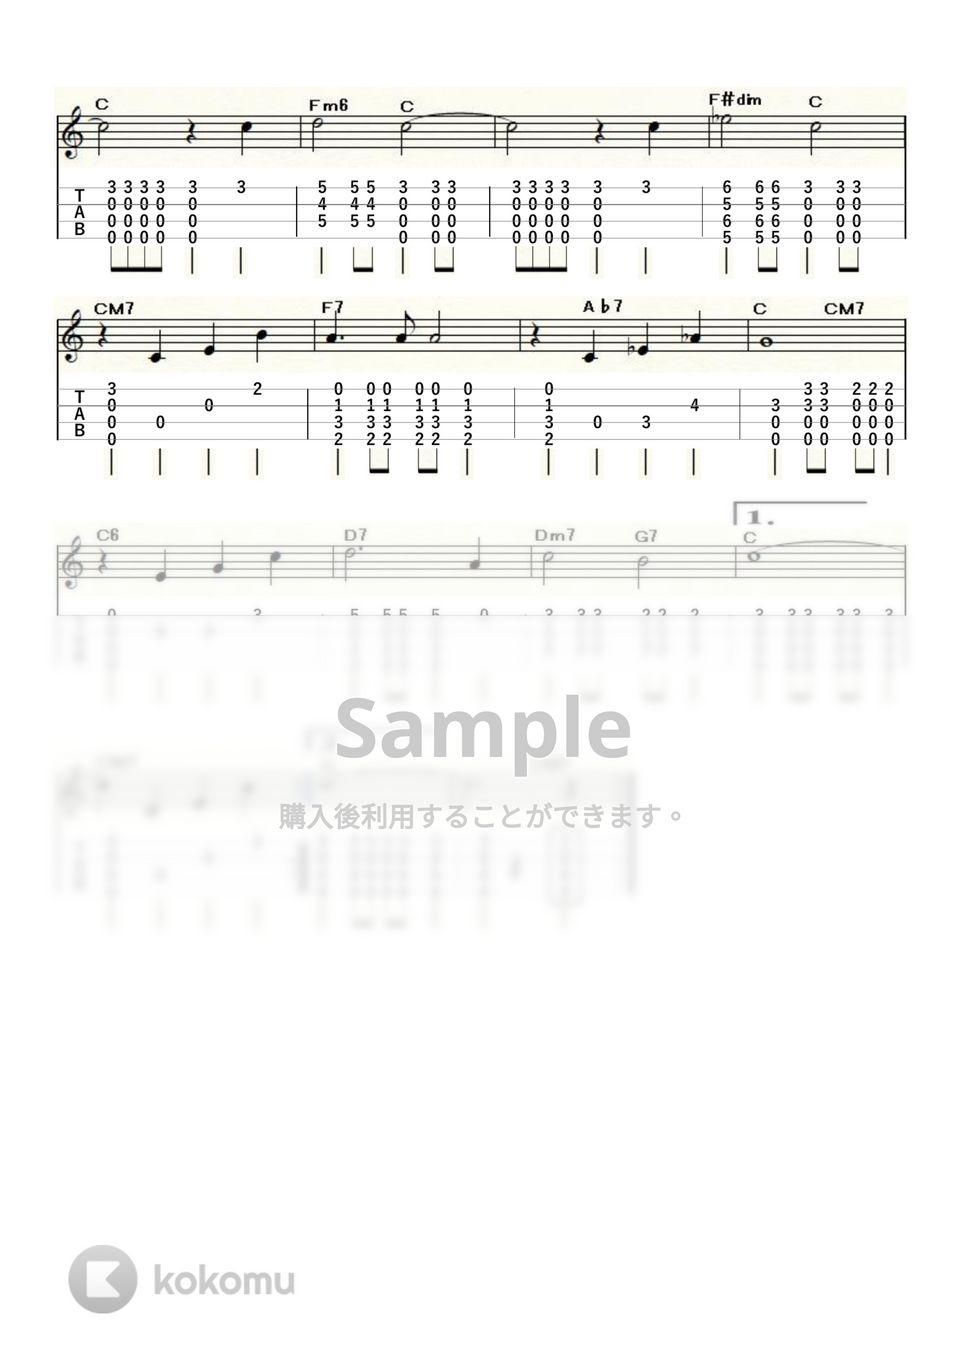 Kurt Weill - September Song (High-G,Low-G) by ukulelepapa